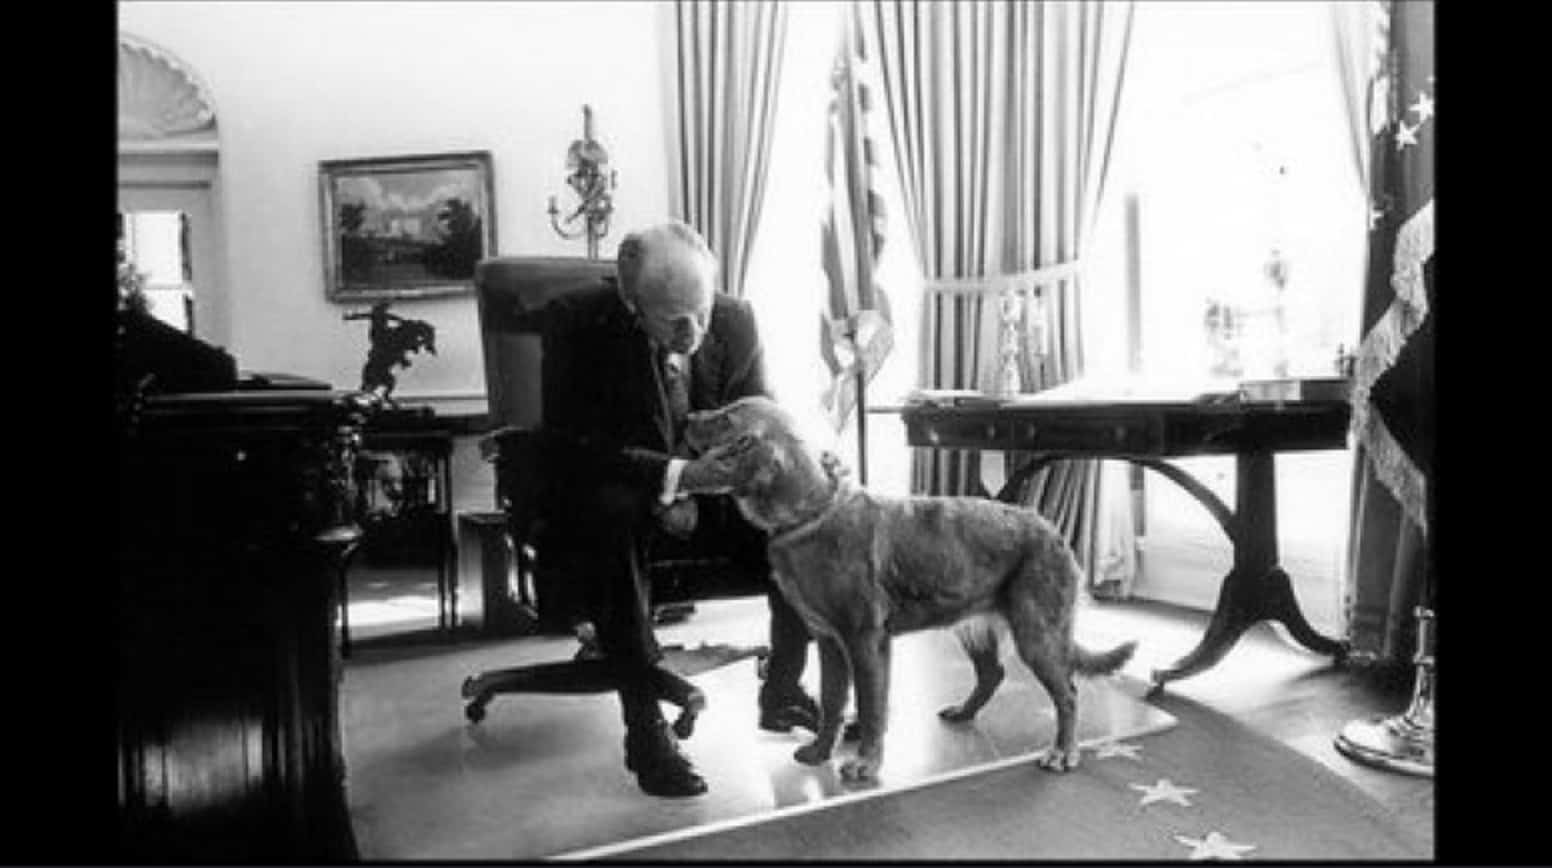 Руководство по воспитанию королевской собаки. Джеральд Форд ретривер. Царская собака. Джеральд Форд с собакой. Либерти собака.